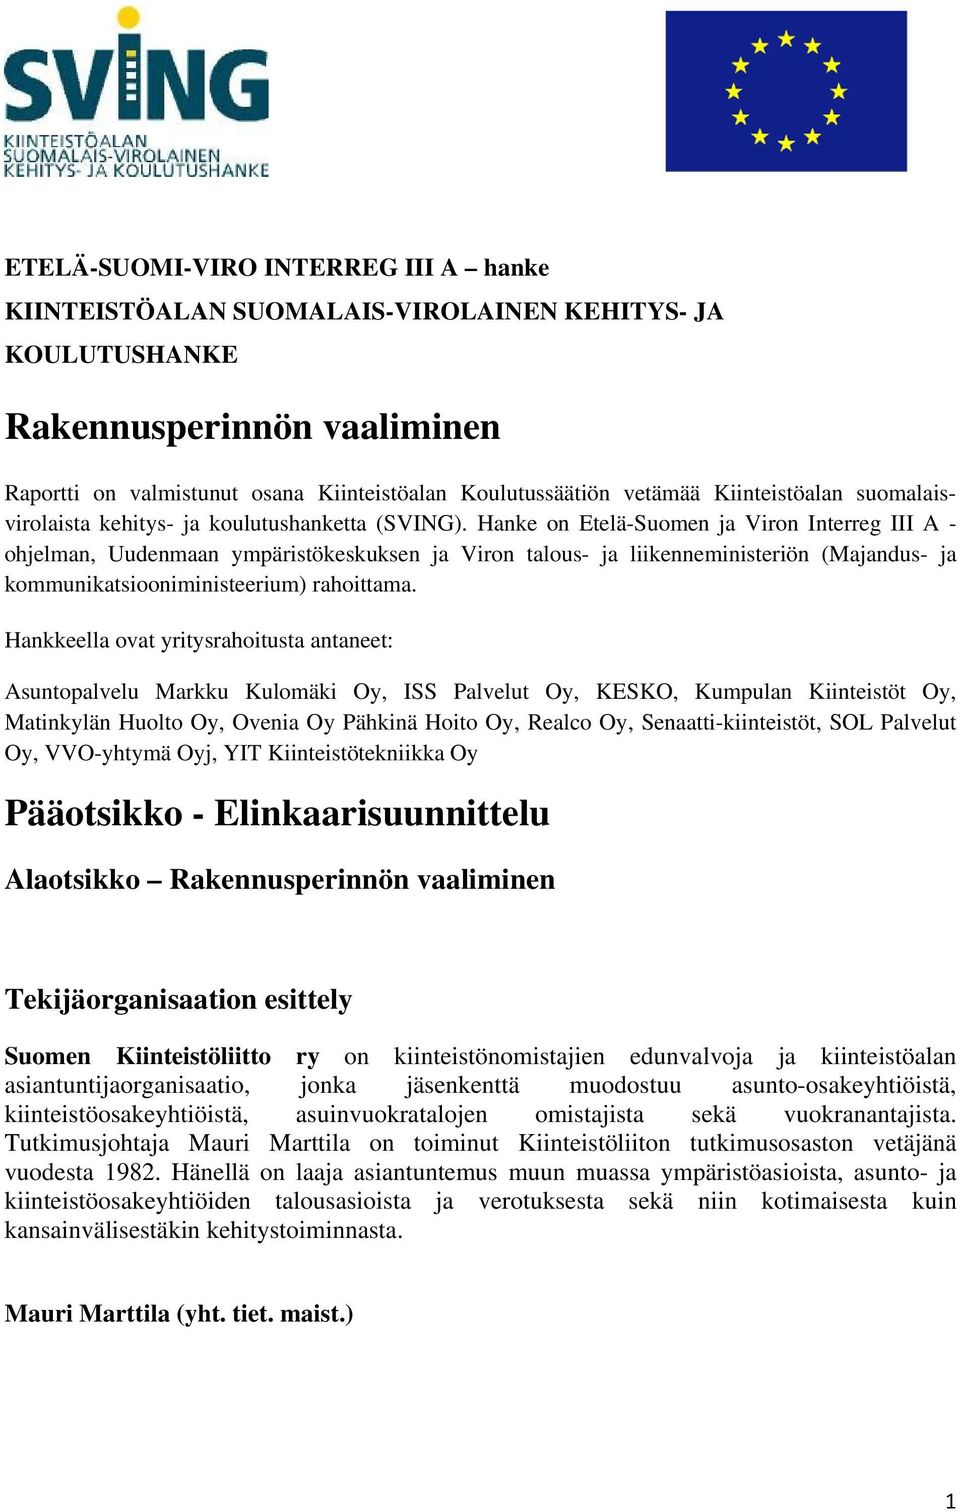 Hanke on Etelä-Suomen ja Viron Interreg III A - ohjelman, Uudenmaan ympäristökeskuksen ja Viron talous- ja liikenneministeriön (Majandus- ja kommunikatsiooniministeerium) rahoittama.